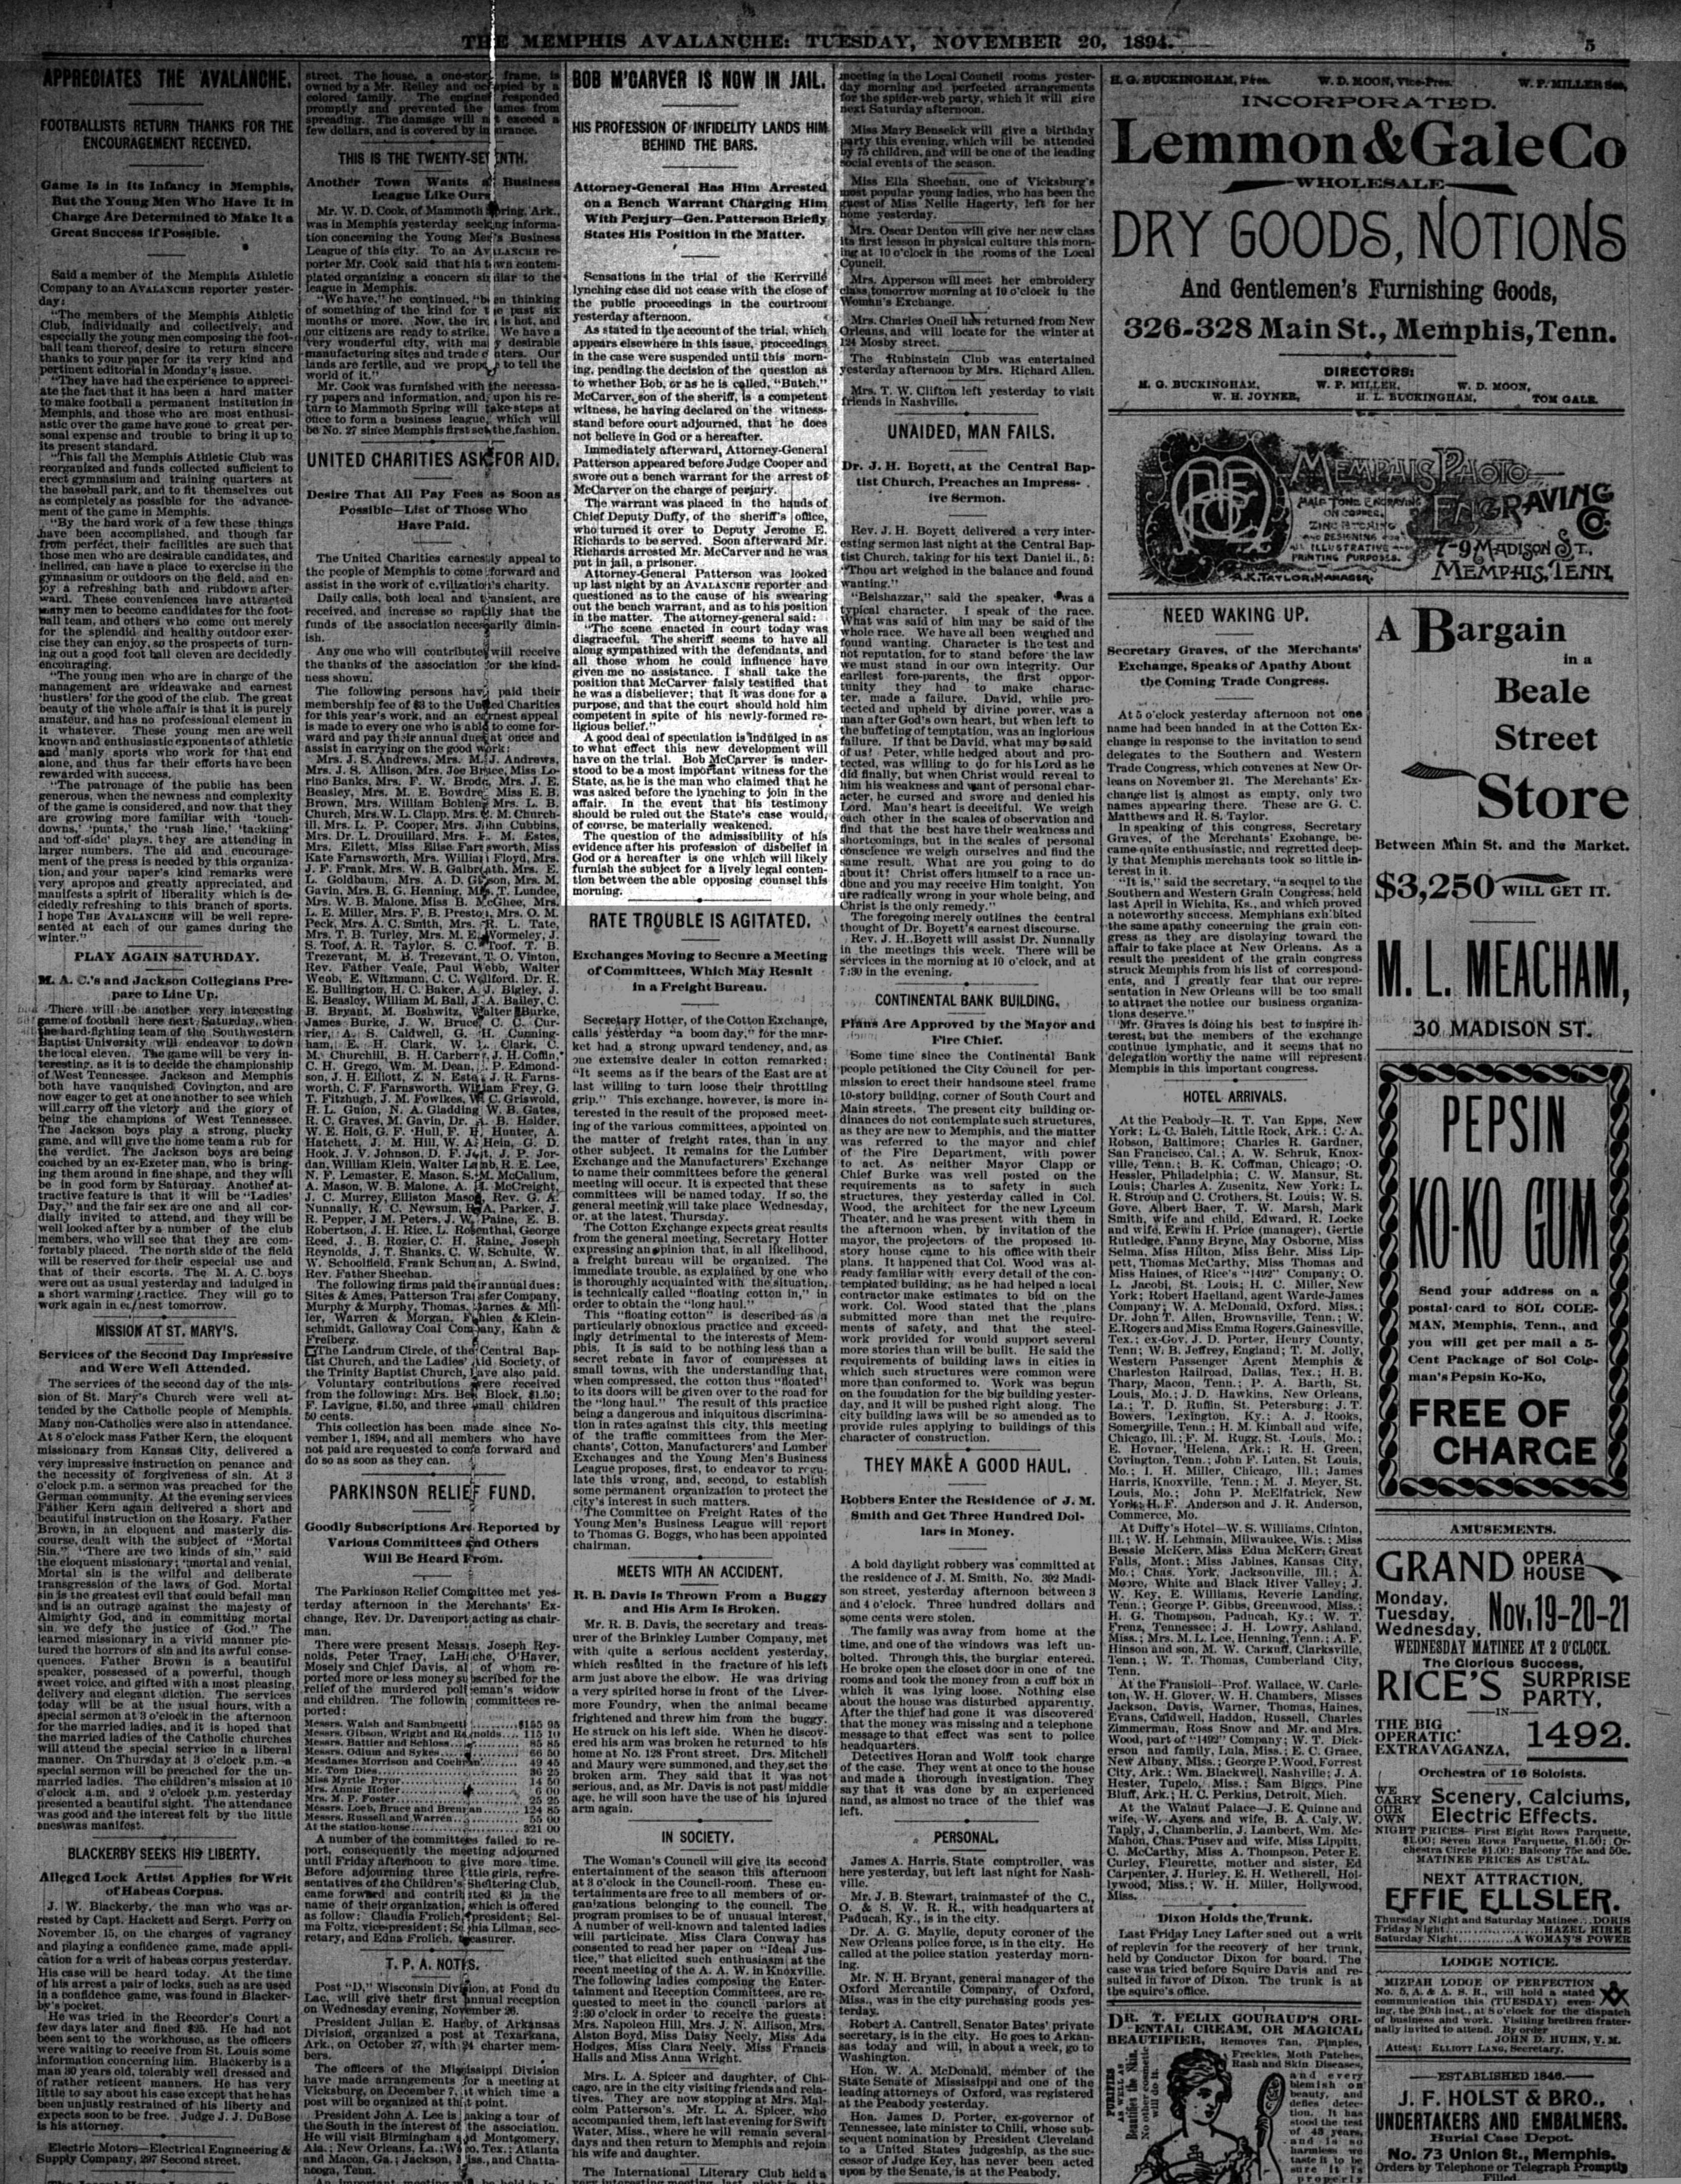 Memphis Avalanche, 11/20/1894